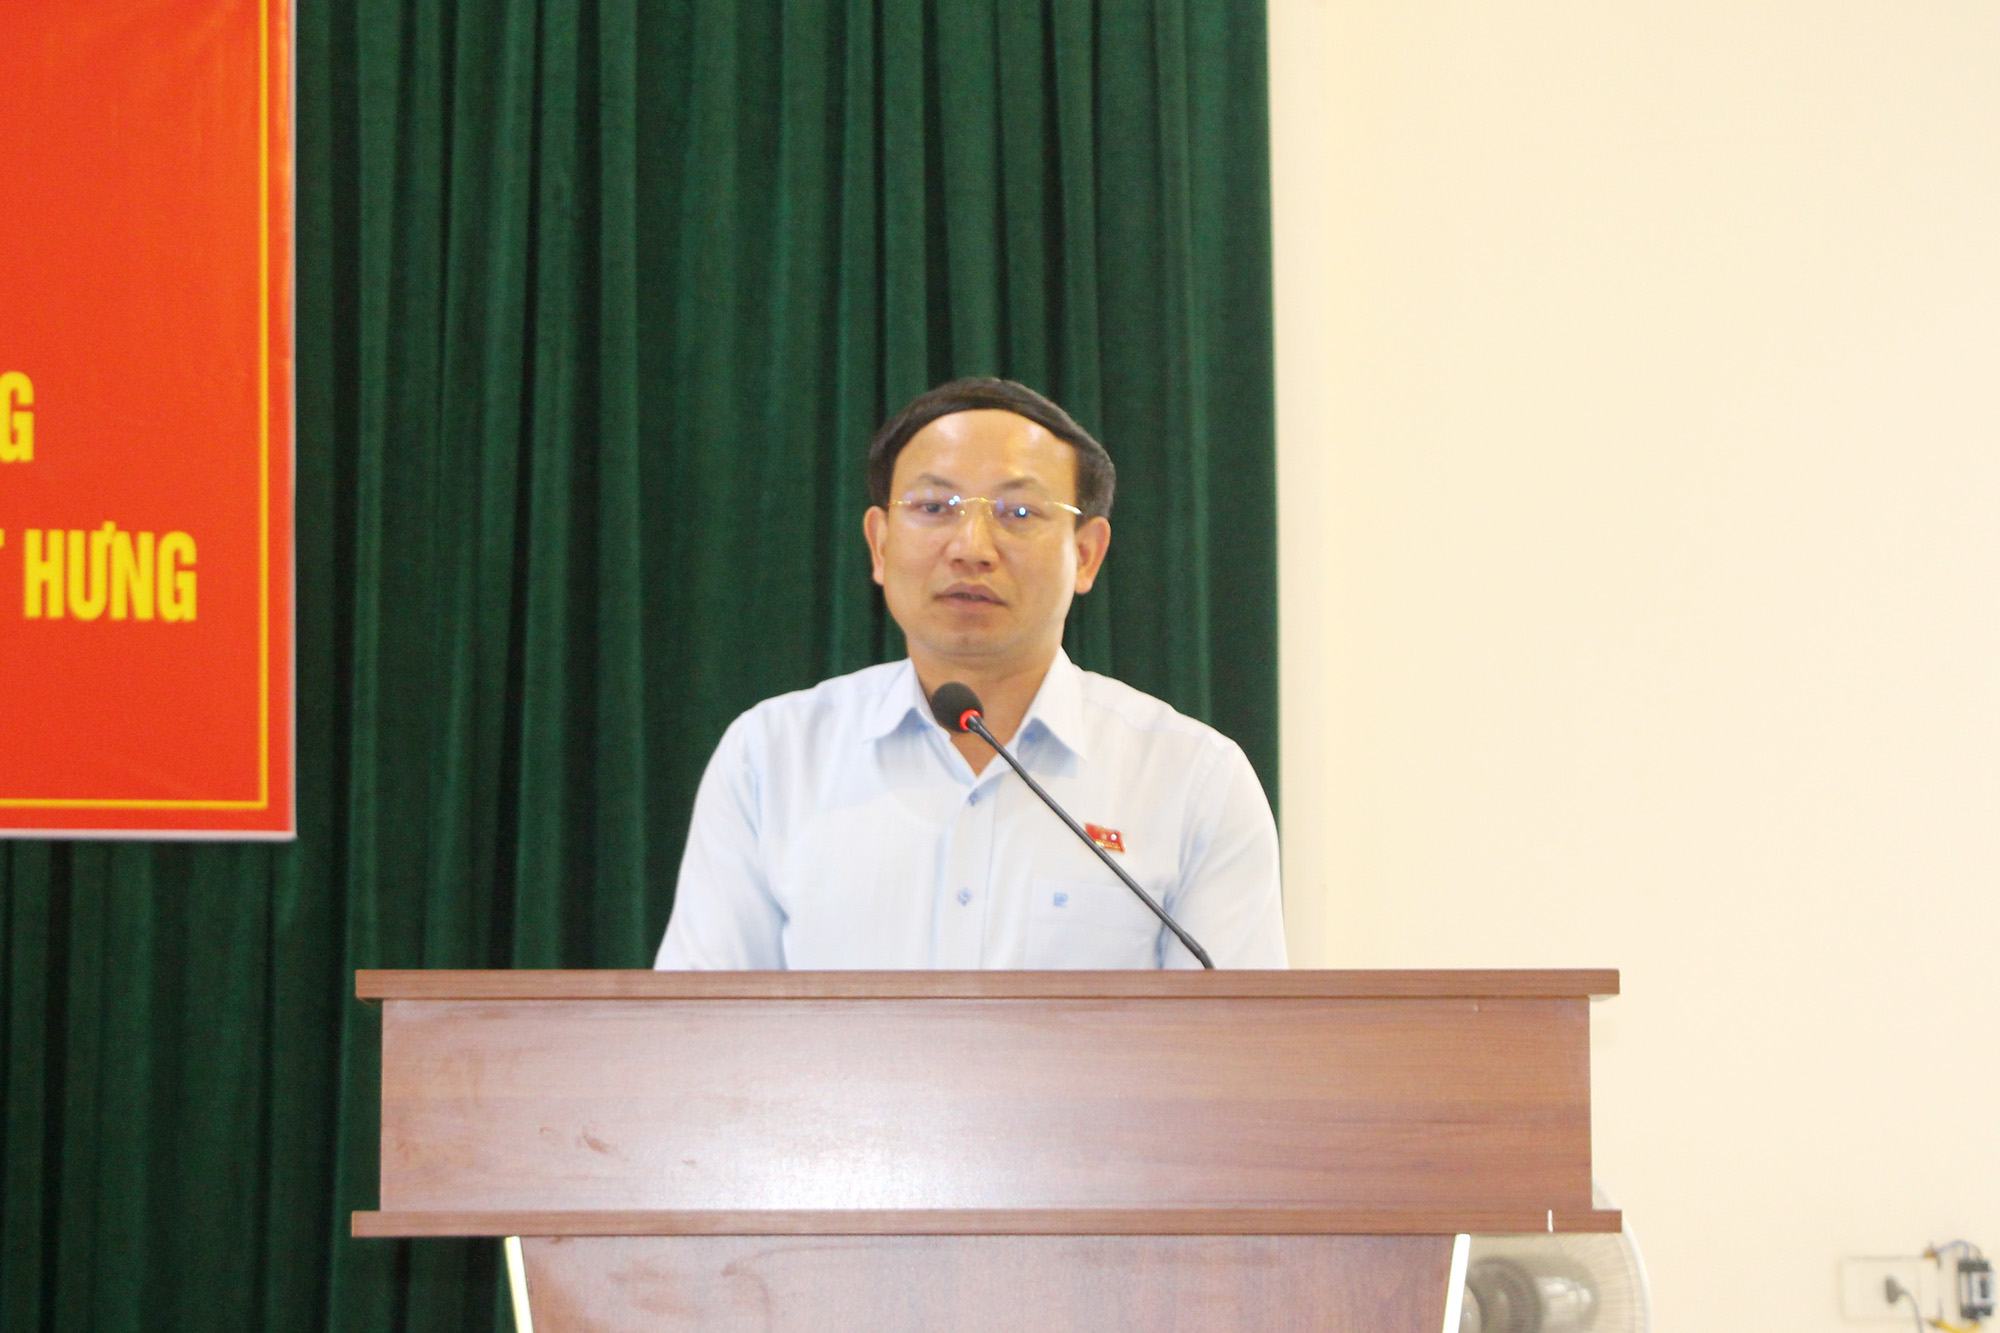 Đồng chí Nguyễn Xuân Ký, Bí thư Tỉnh ủy, Chủ tịch HĐND tỉnh, phát biểu tại buổi tiếp xúc cử tri.